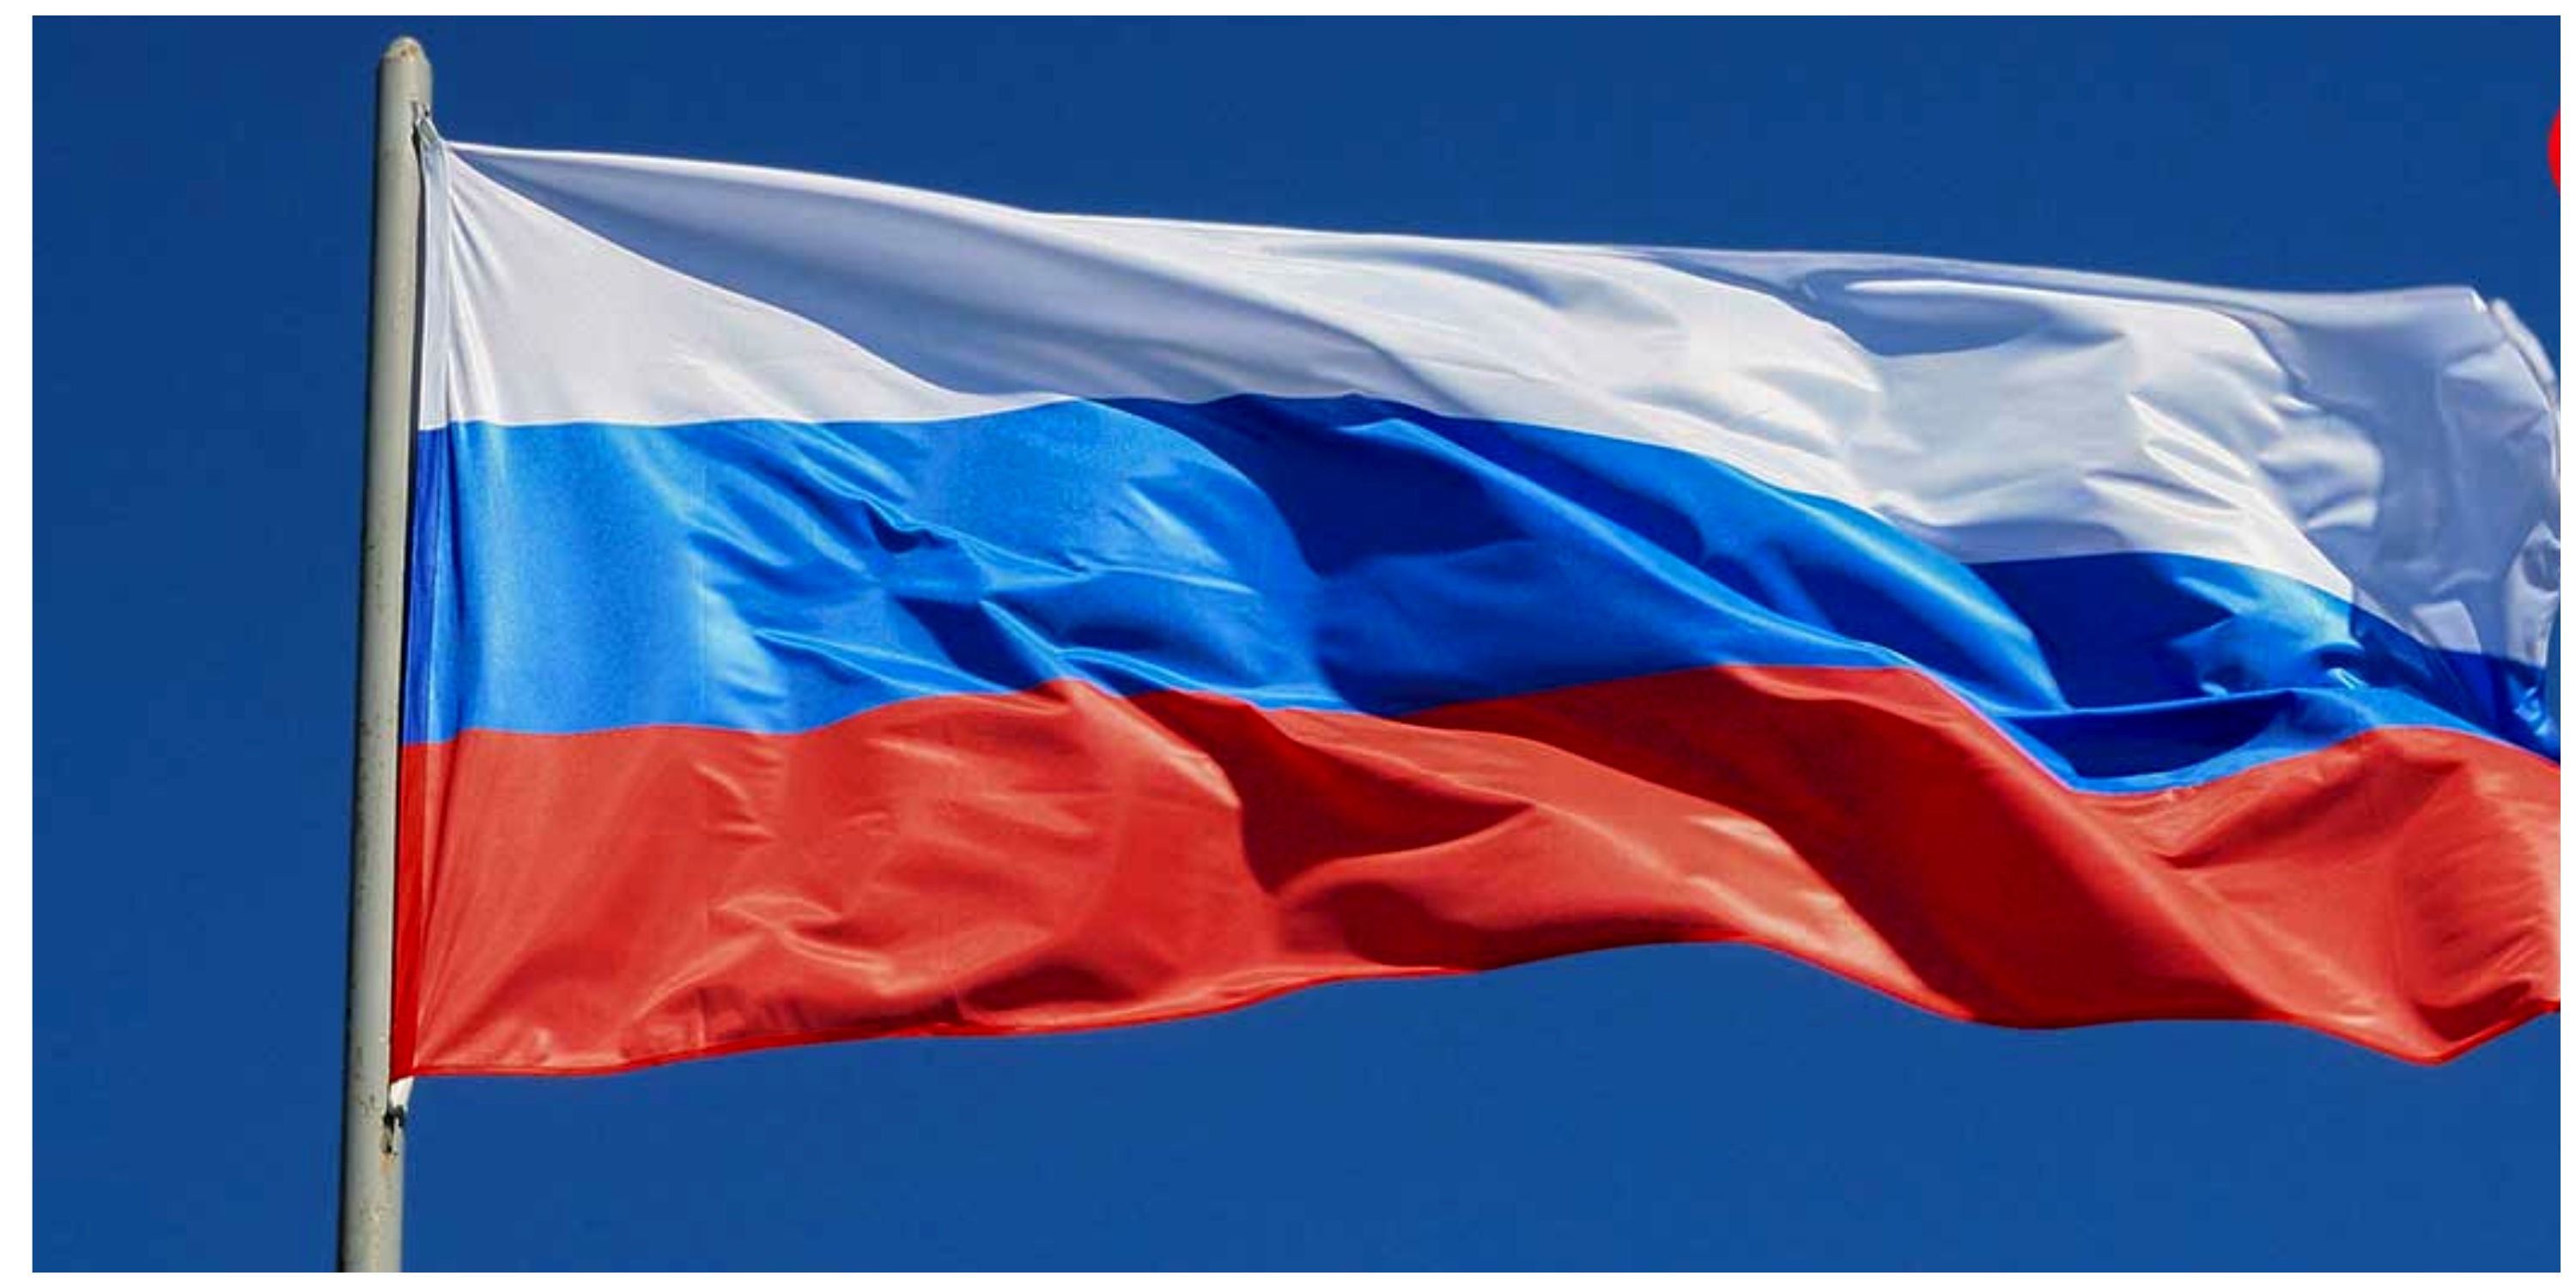 روسیه: هرگز ناتو را تهدید نکرده‌ایم